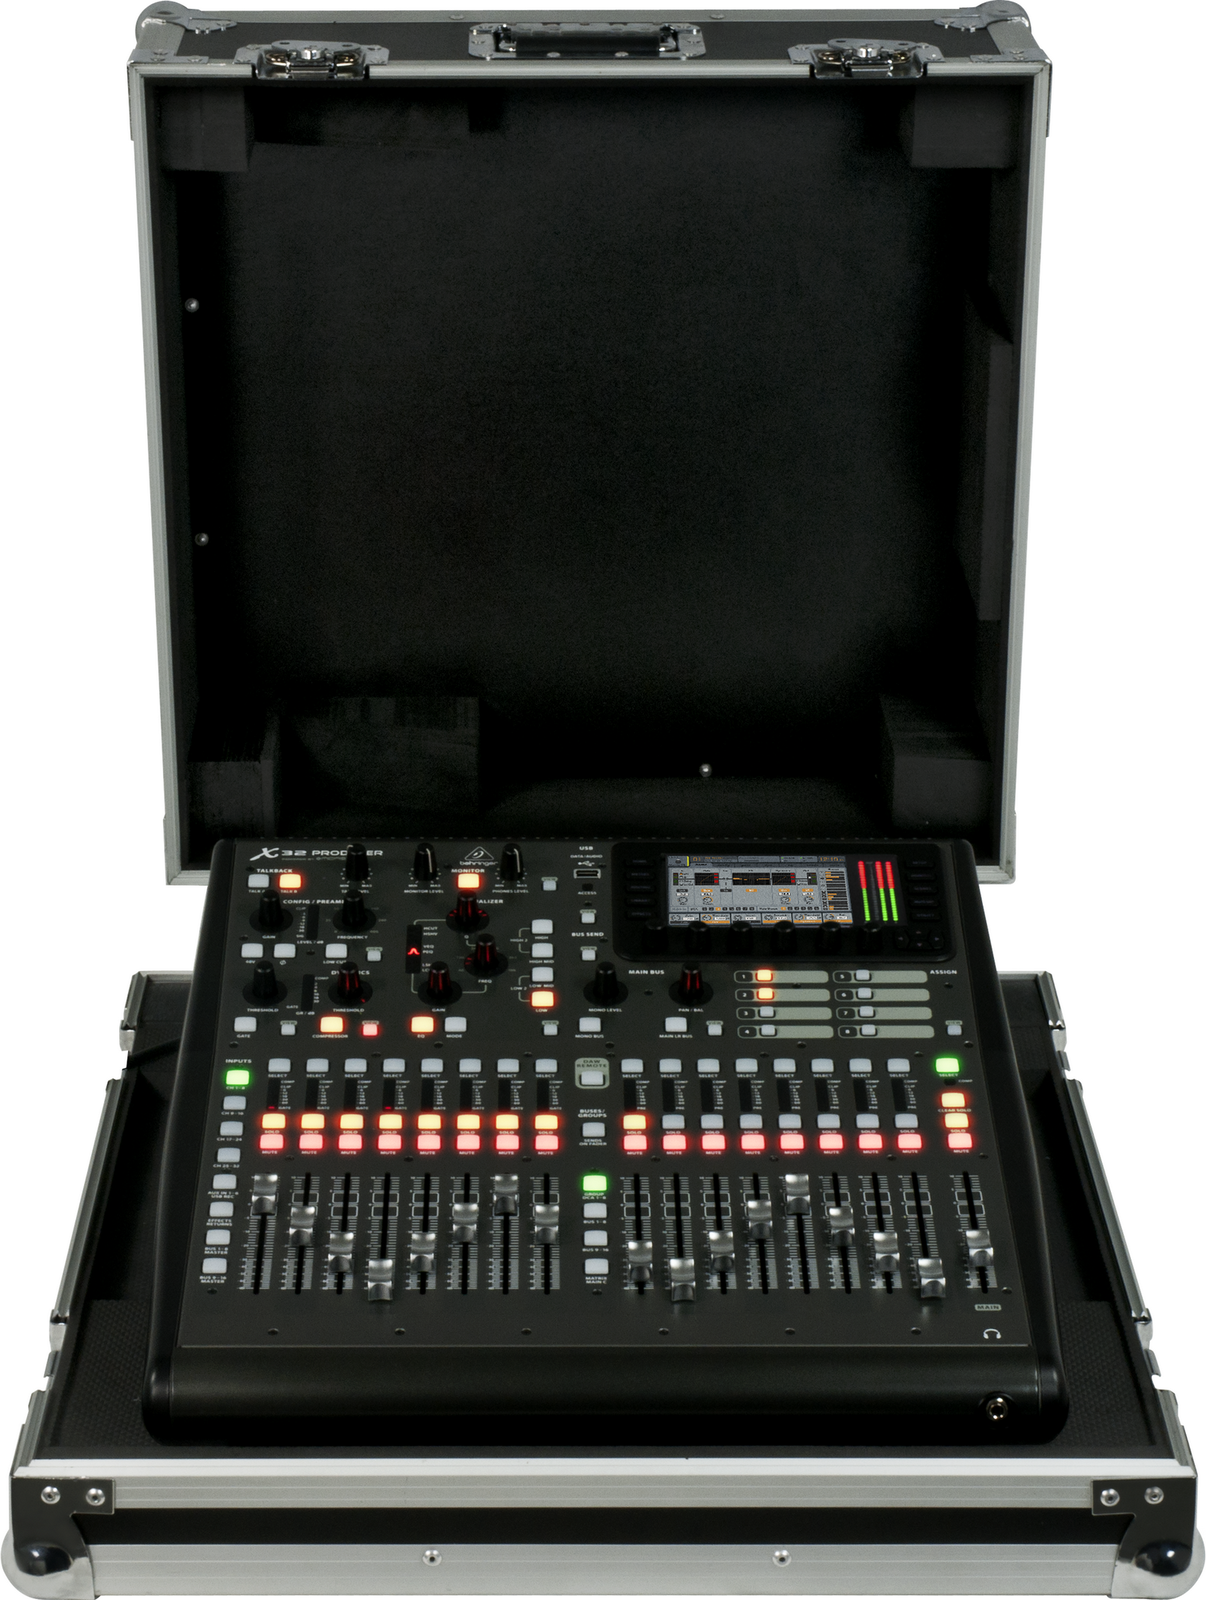 Table de mixage analogique Behringer X32 Compact TP